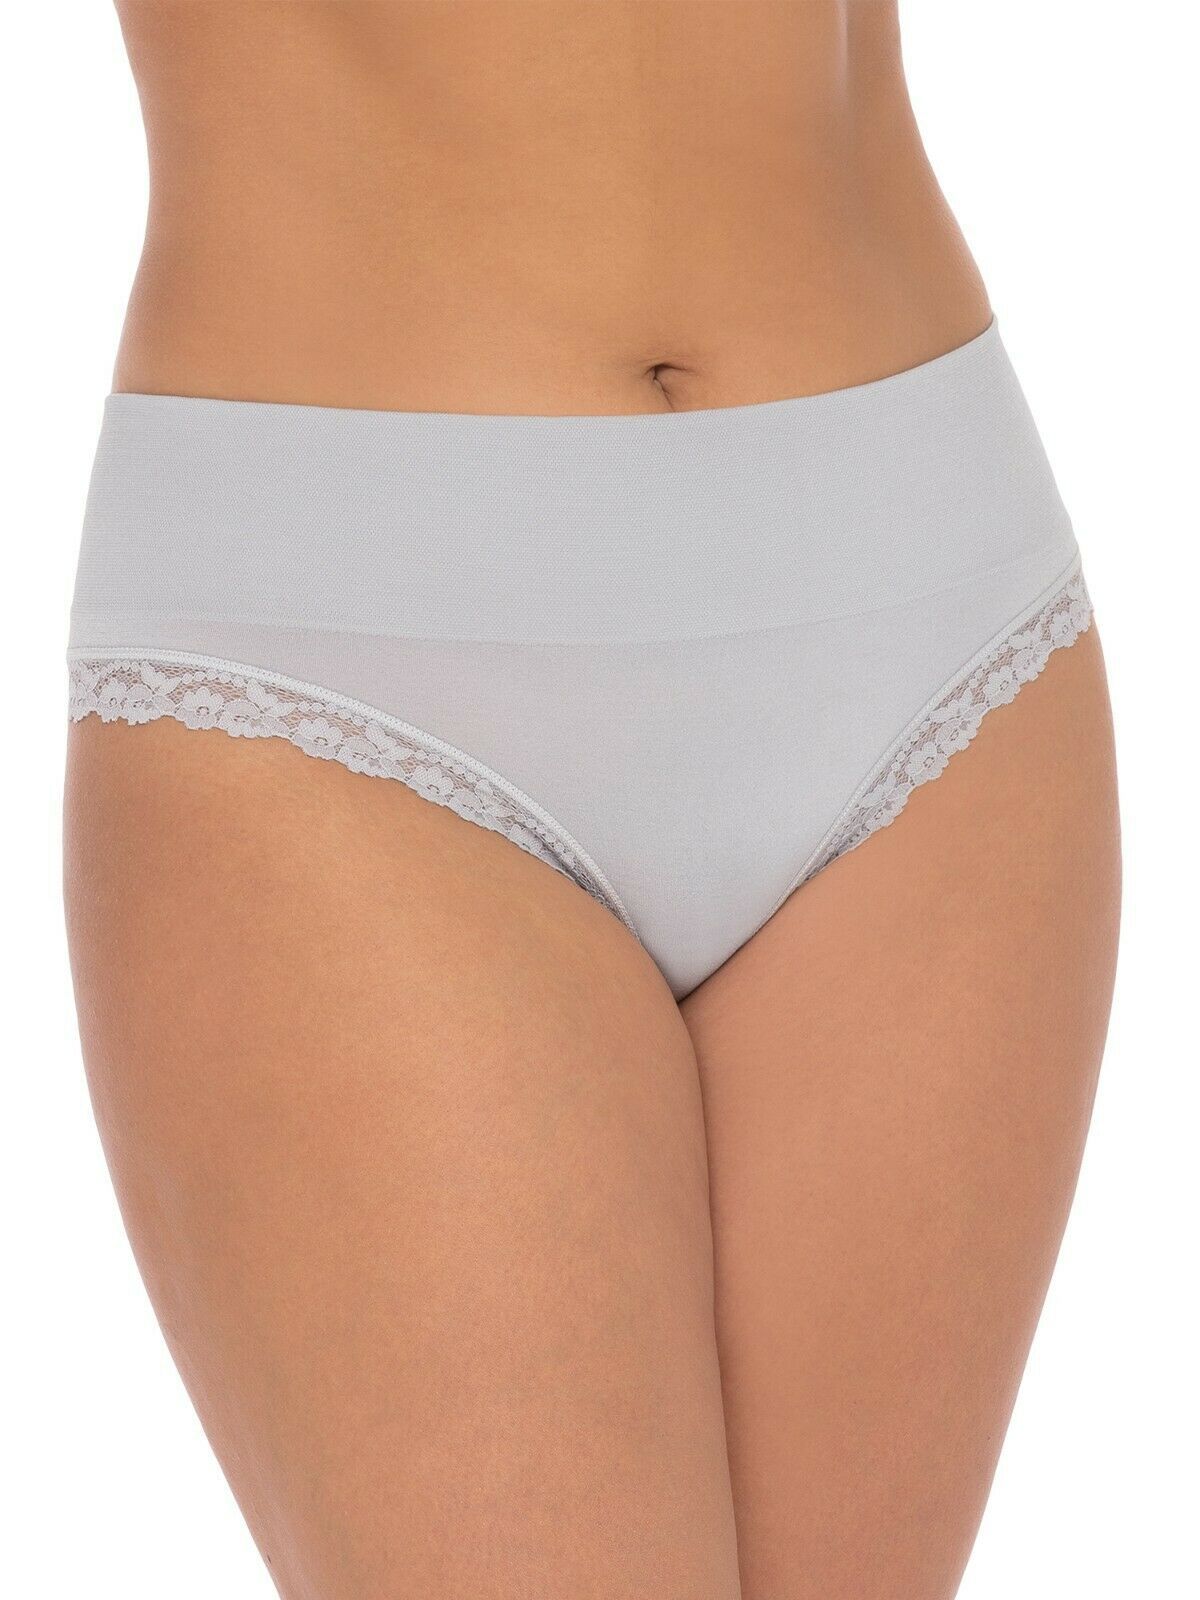 Secret Treasures Women's Wideband Seamless Thong Panties Size LARGE Grey